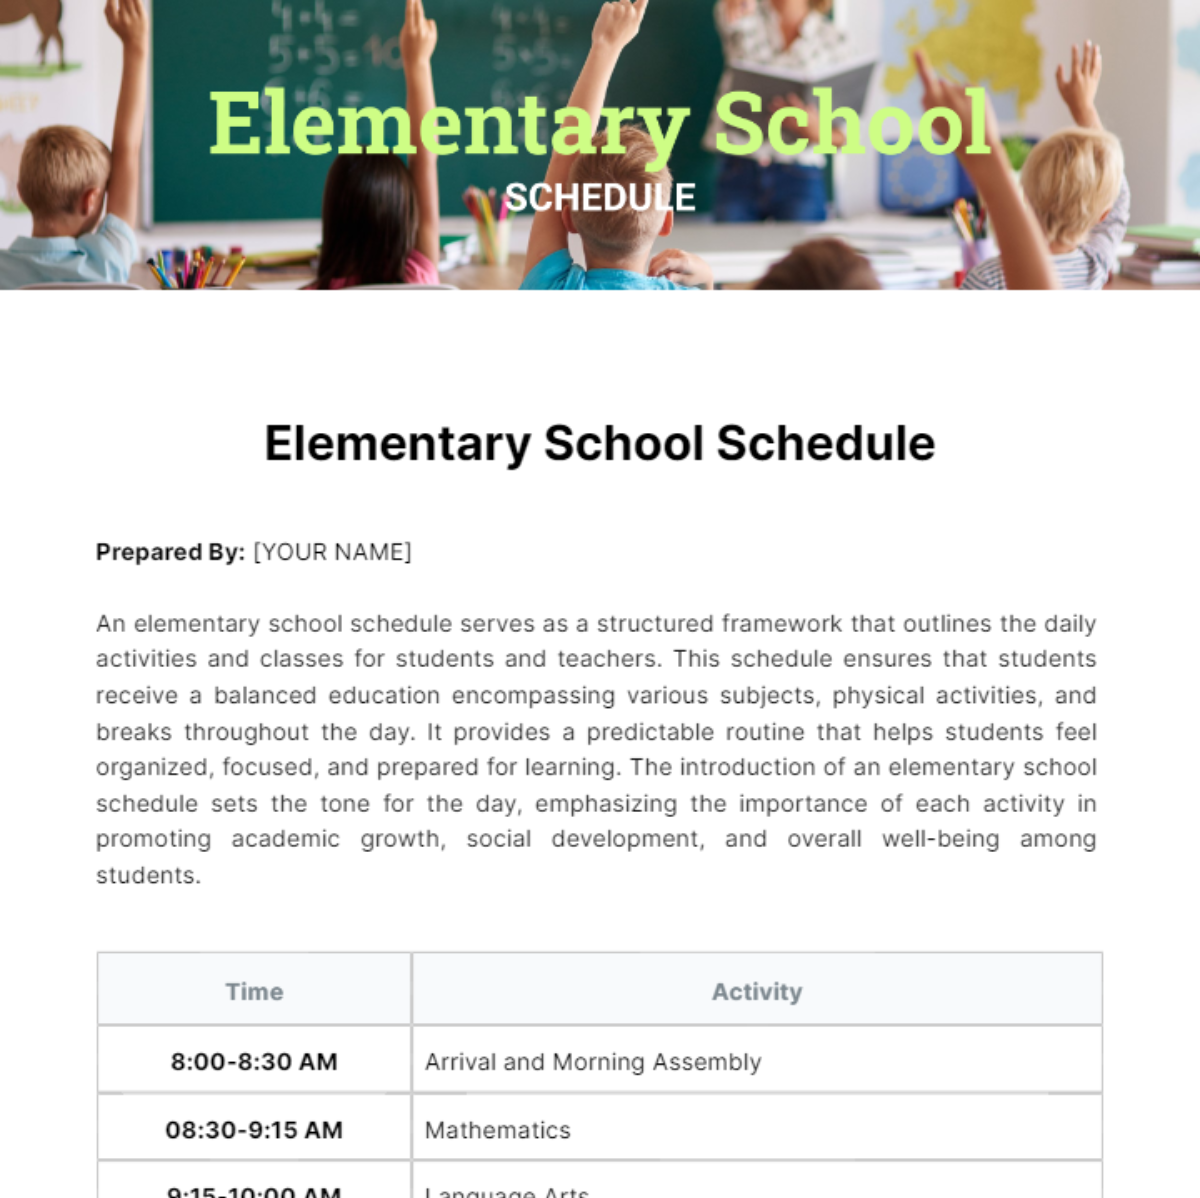 Elementary School Schedule Template